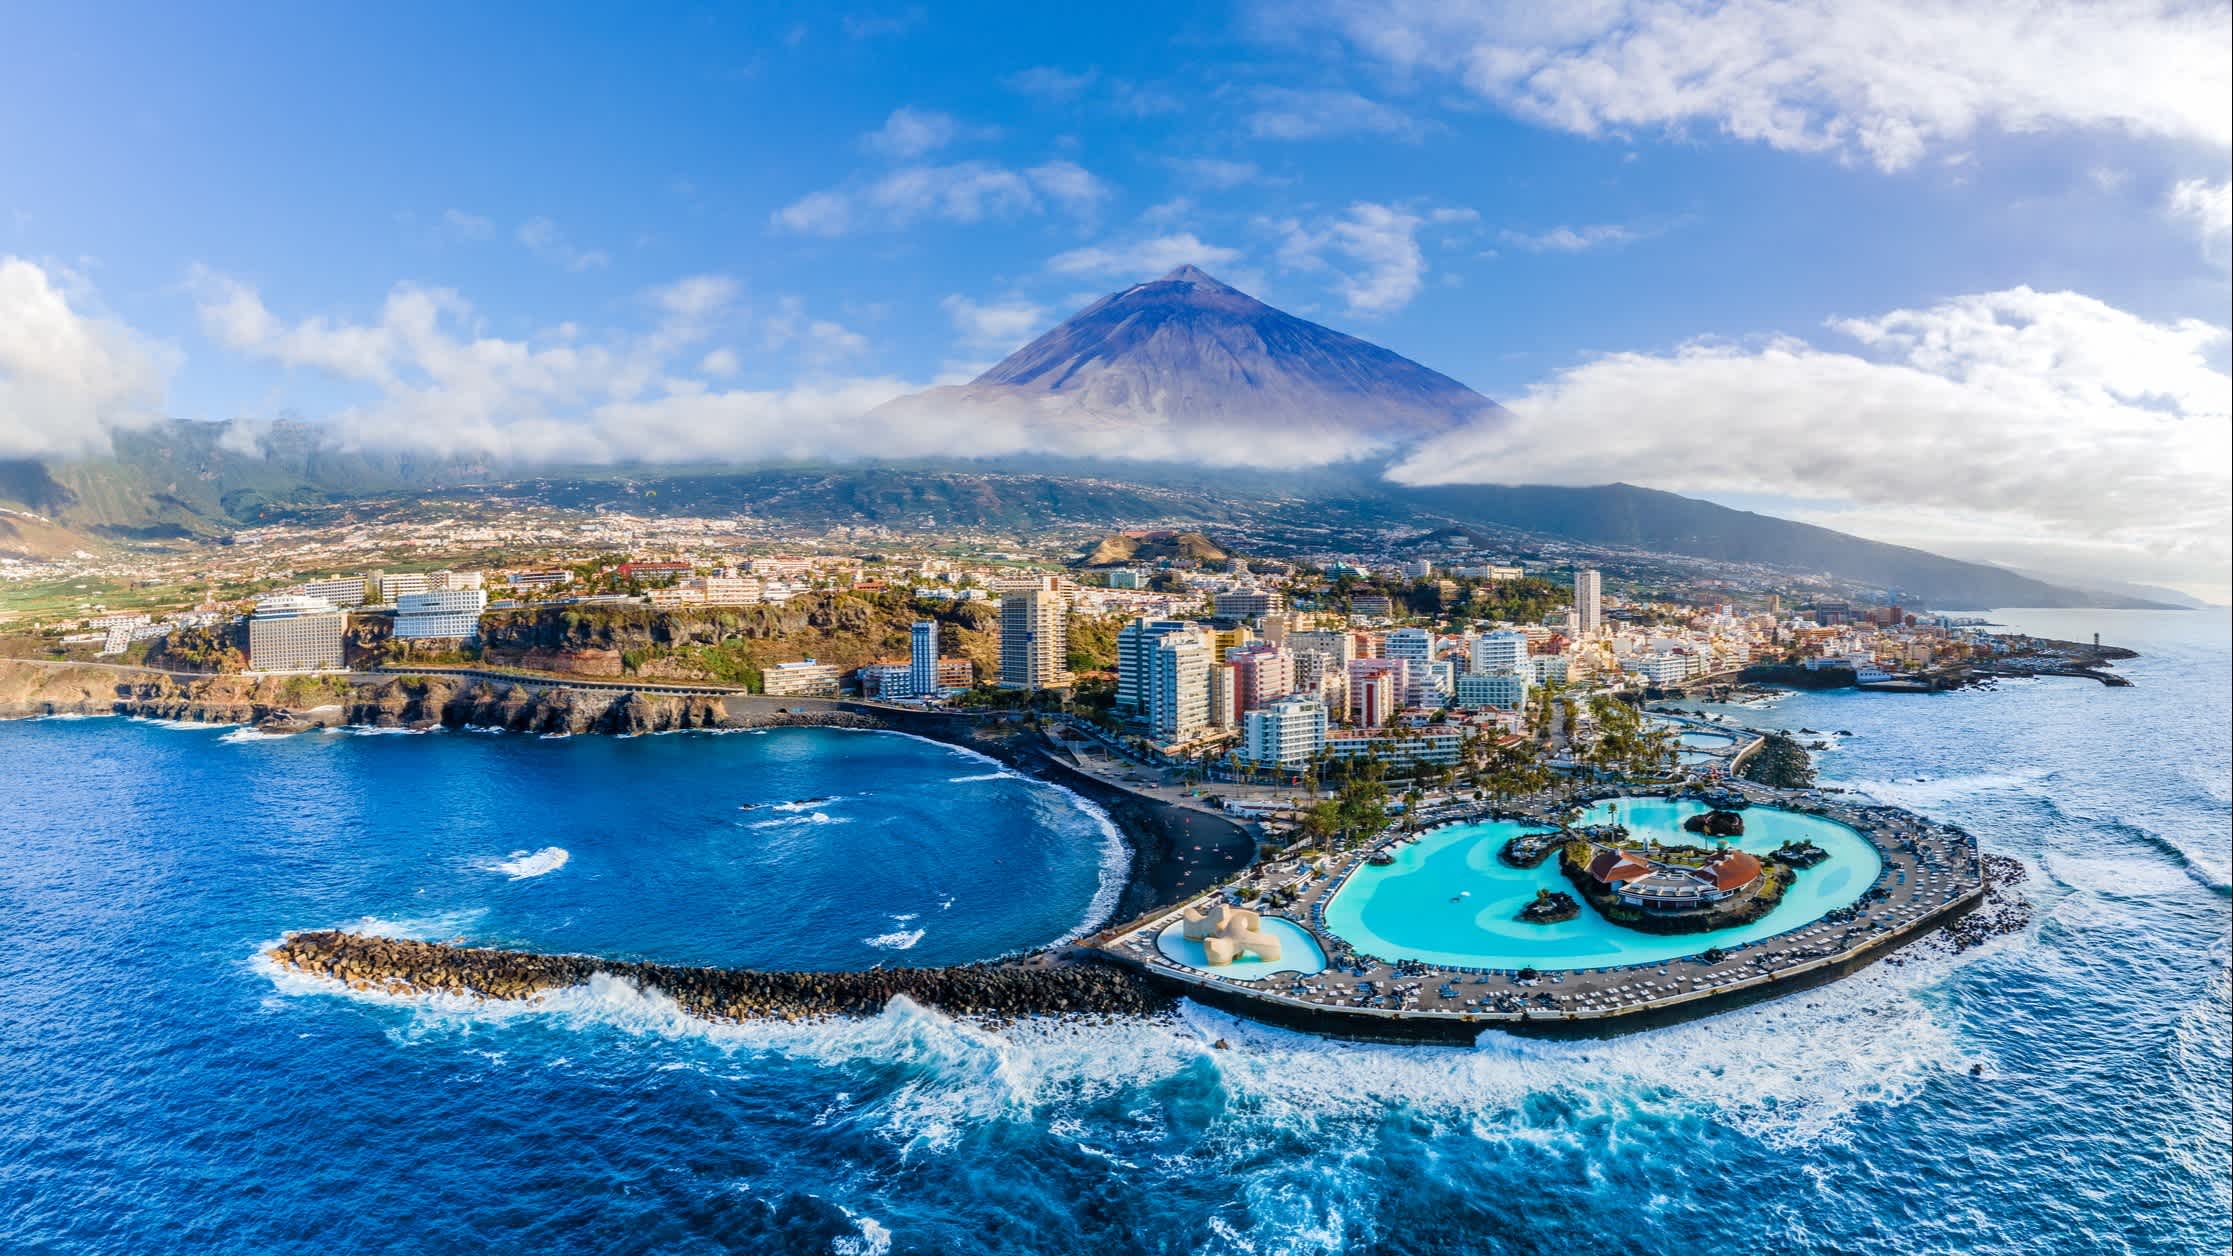 Puerto de la Cruz avec le volcan Teide en arrière-plan, Tenerife dans les Canaries, Espagne.

